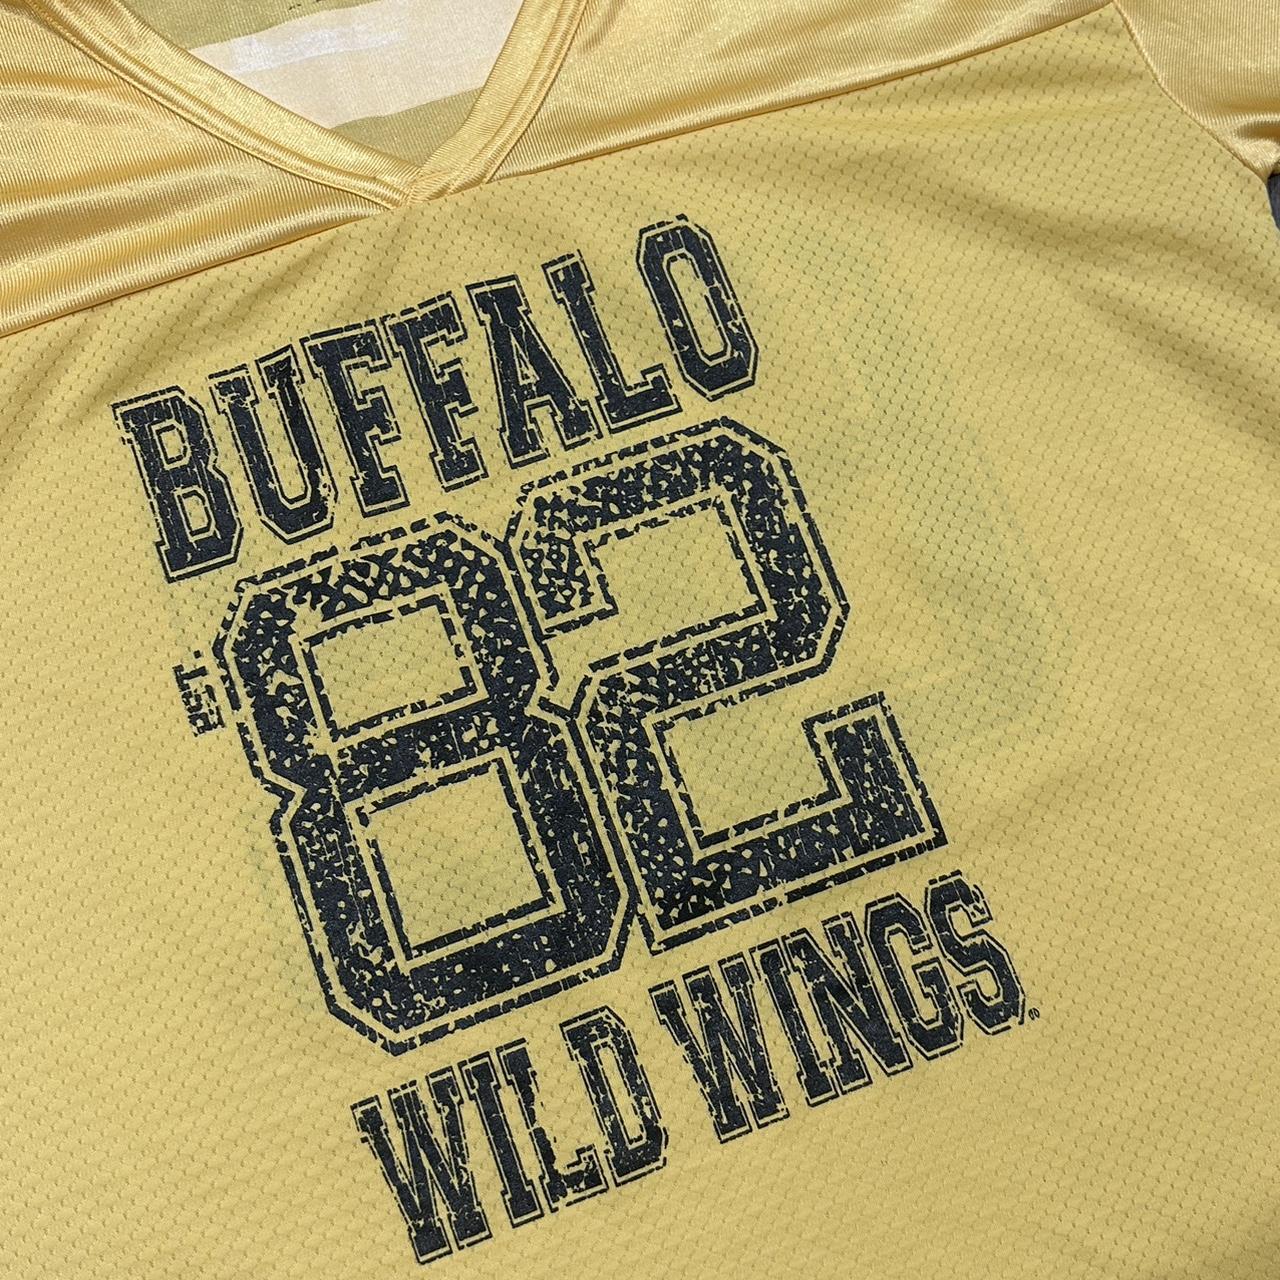 Buffalo Wild Wings jersey size Medium - Depop